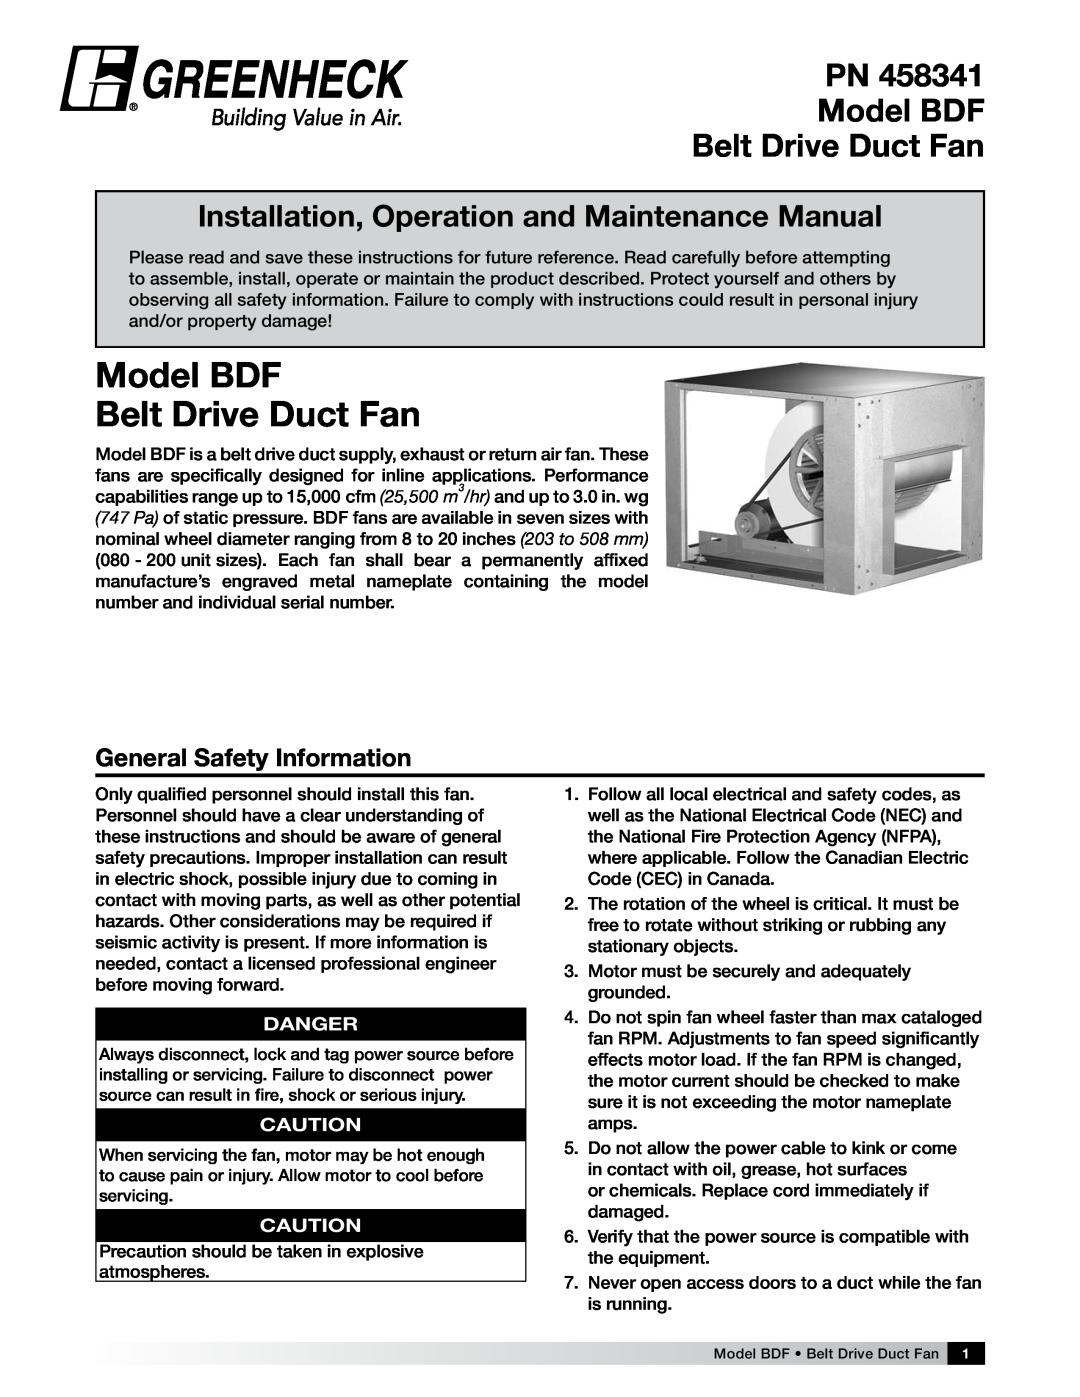 Greenheck Fan manual General Safety Information, PN Model BDF Belt Drive Duct Fan, Danger 